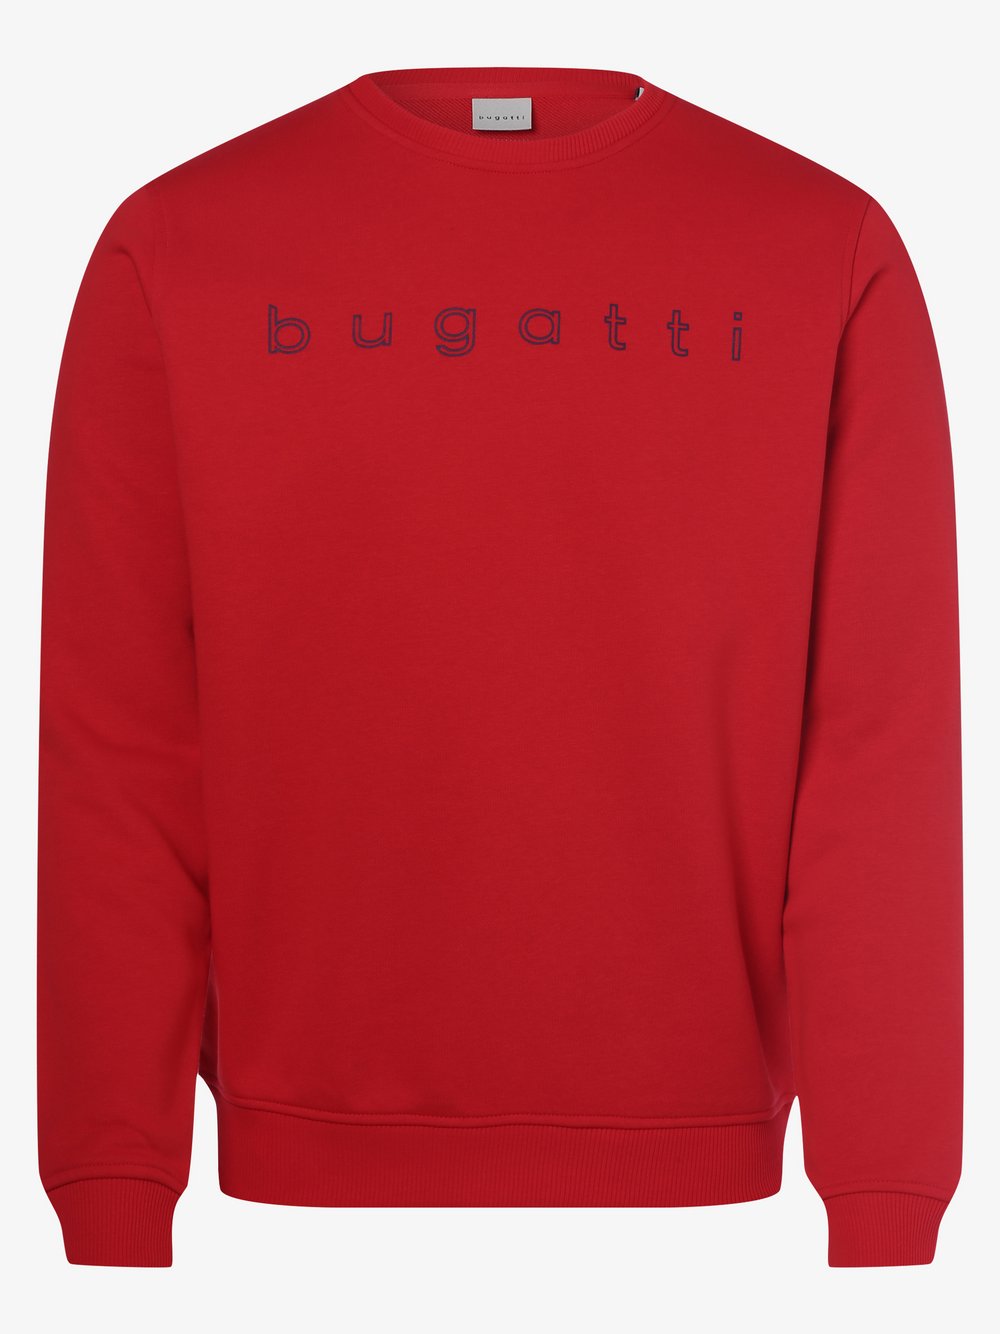 Bugatti - Męska bluza nierozpinana, czerwony